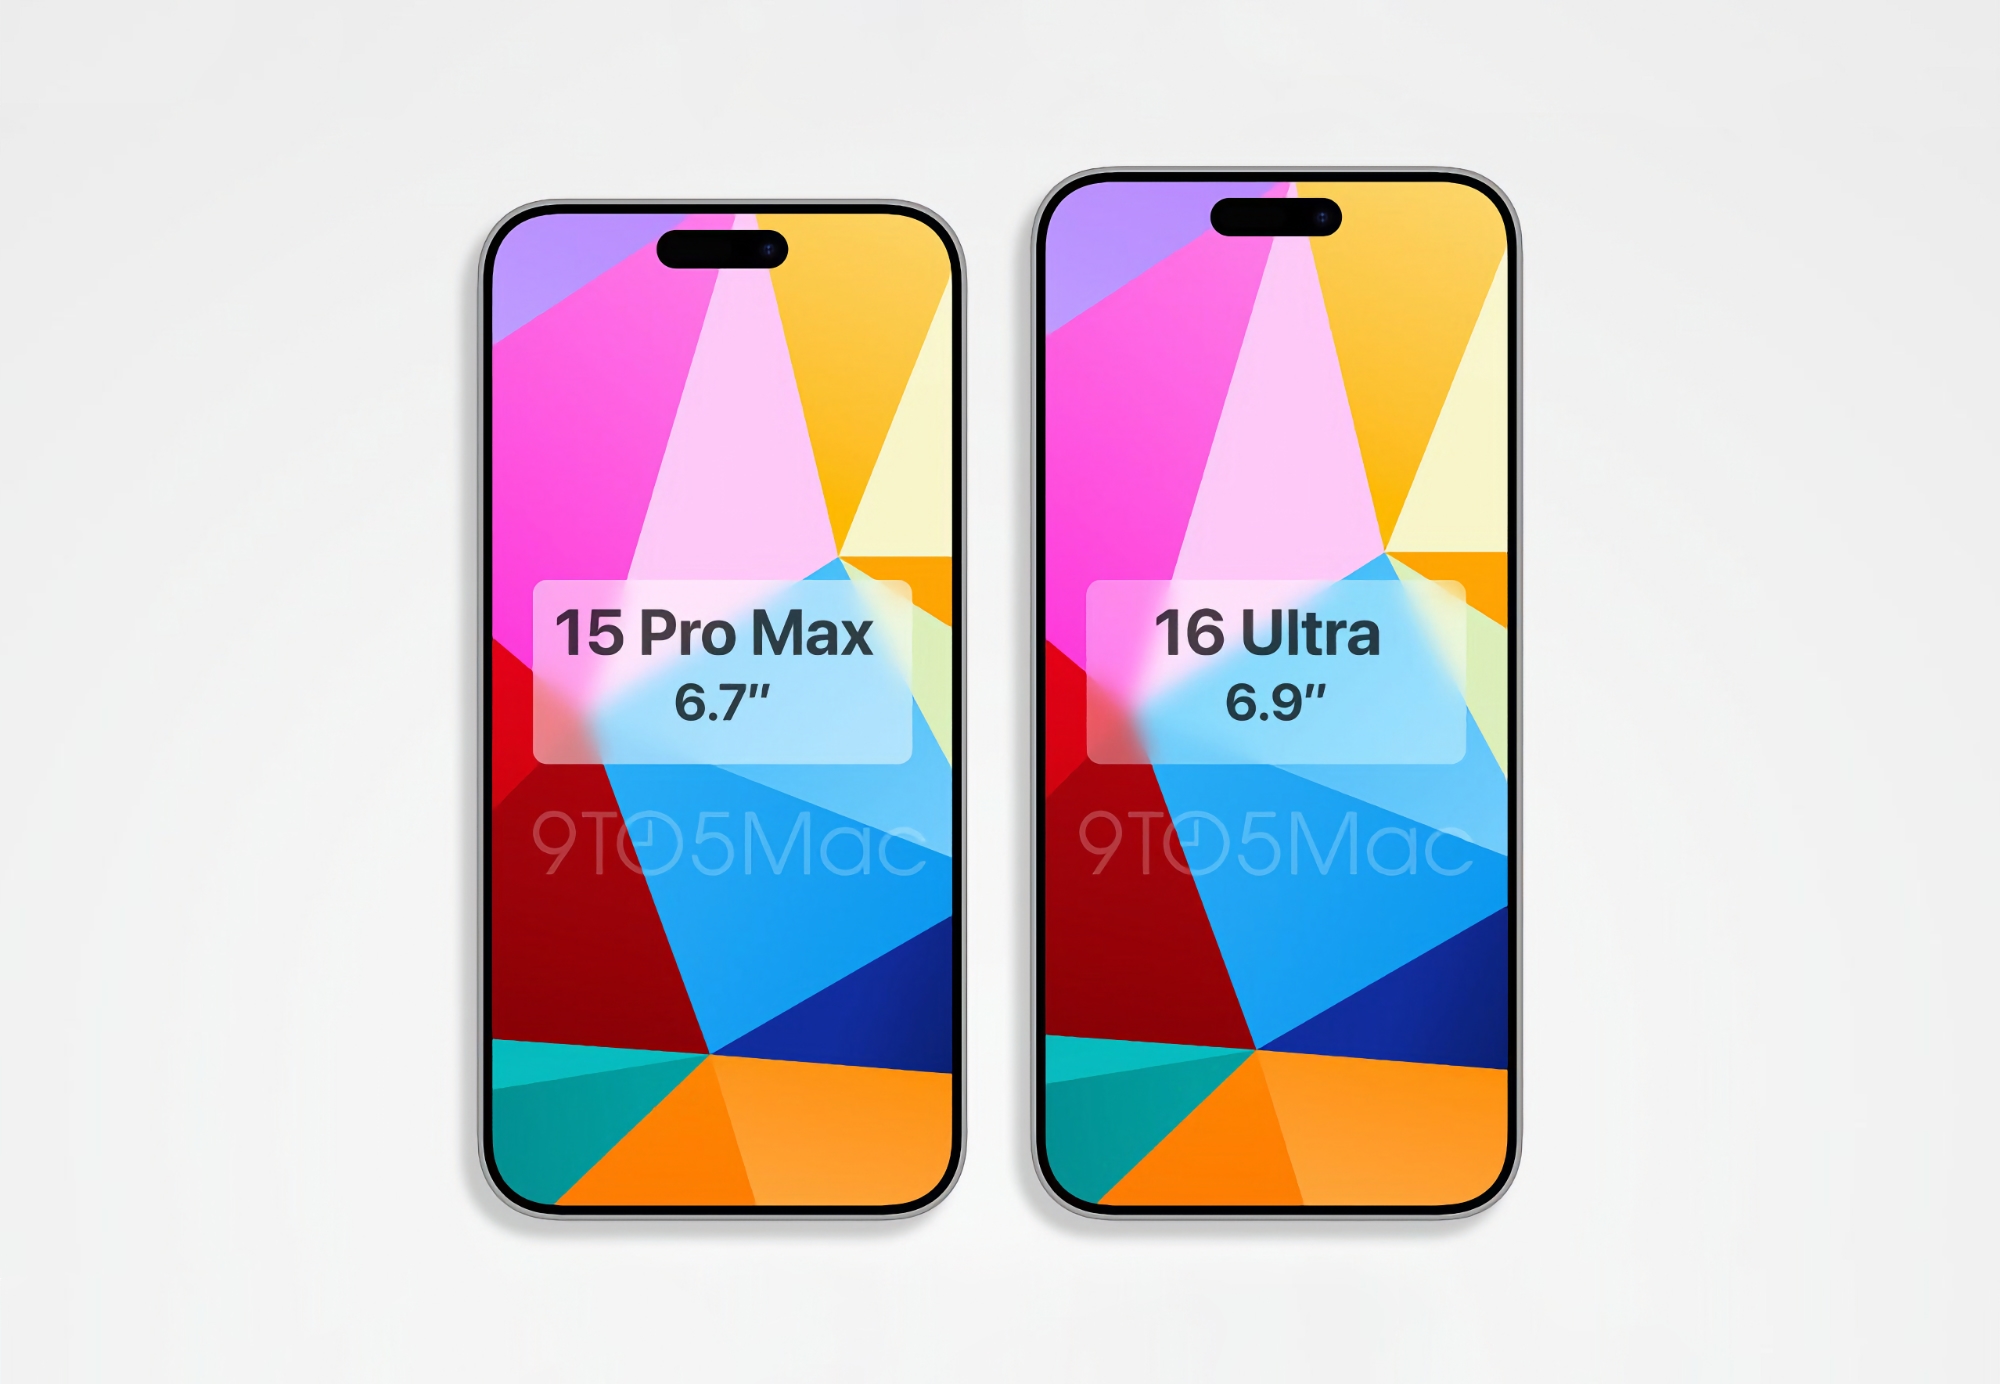 Rendery iPhone'a 16 Pro Max pojawiły się w sieci, porównując go do iPhone'a 15 Pro Max